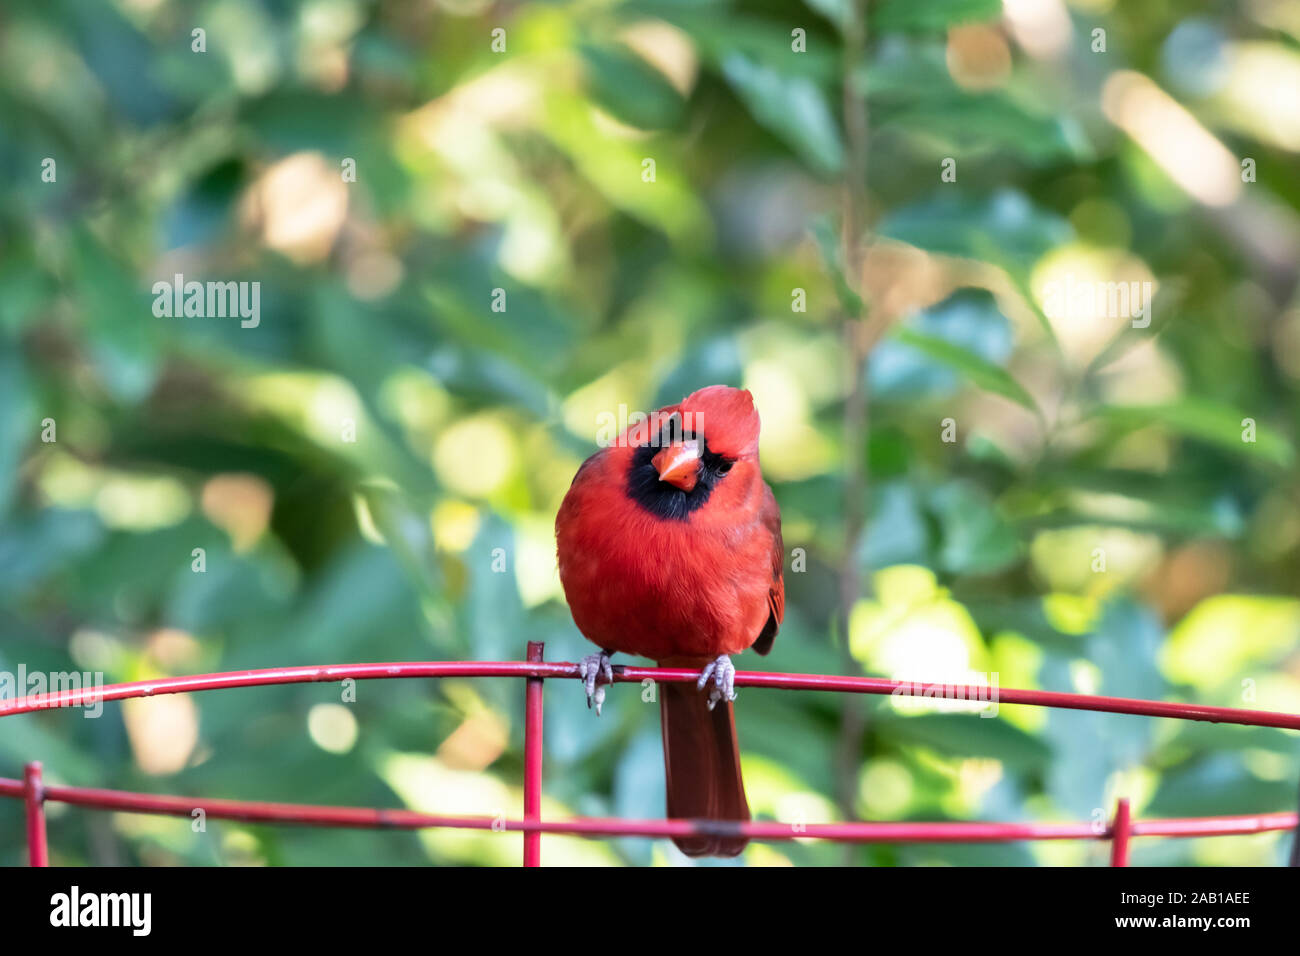 Un hombre cardenal norteño encaramado sobre una planta de jardín wire frame en Florida. Los Cardenales son aves canoras que no migran, sino que permanecen todo el año. Foto de stock